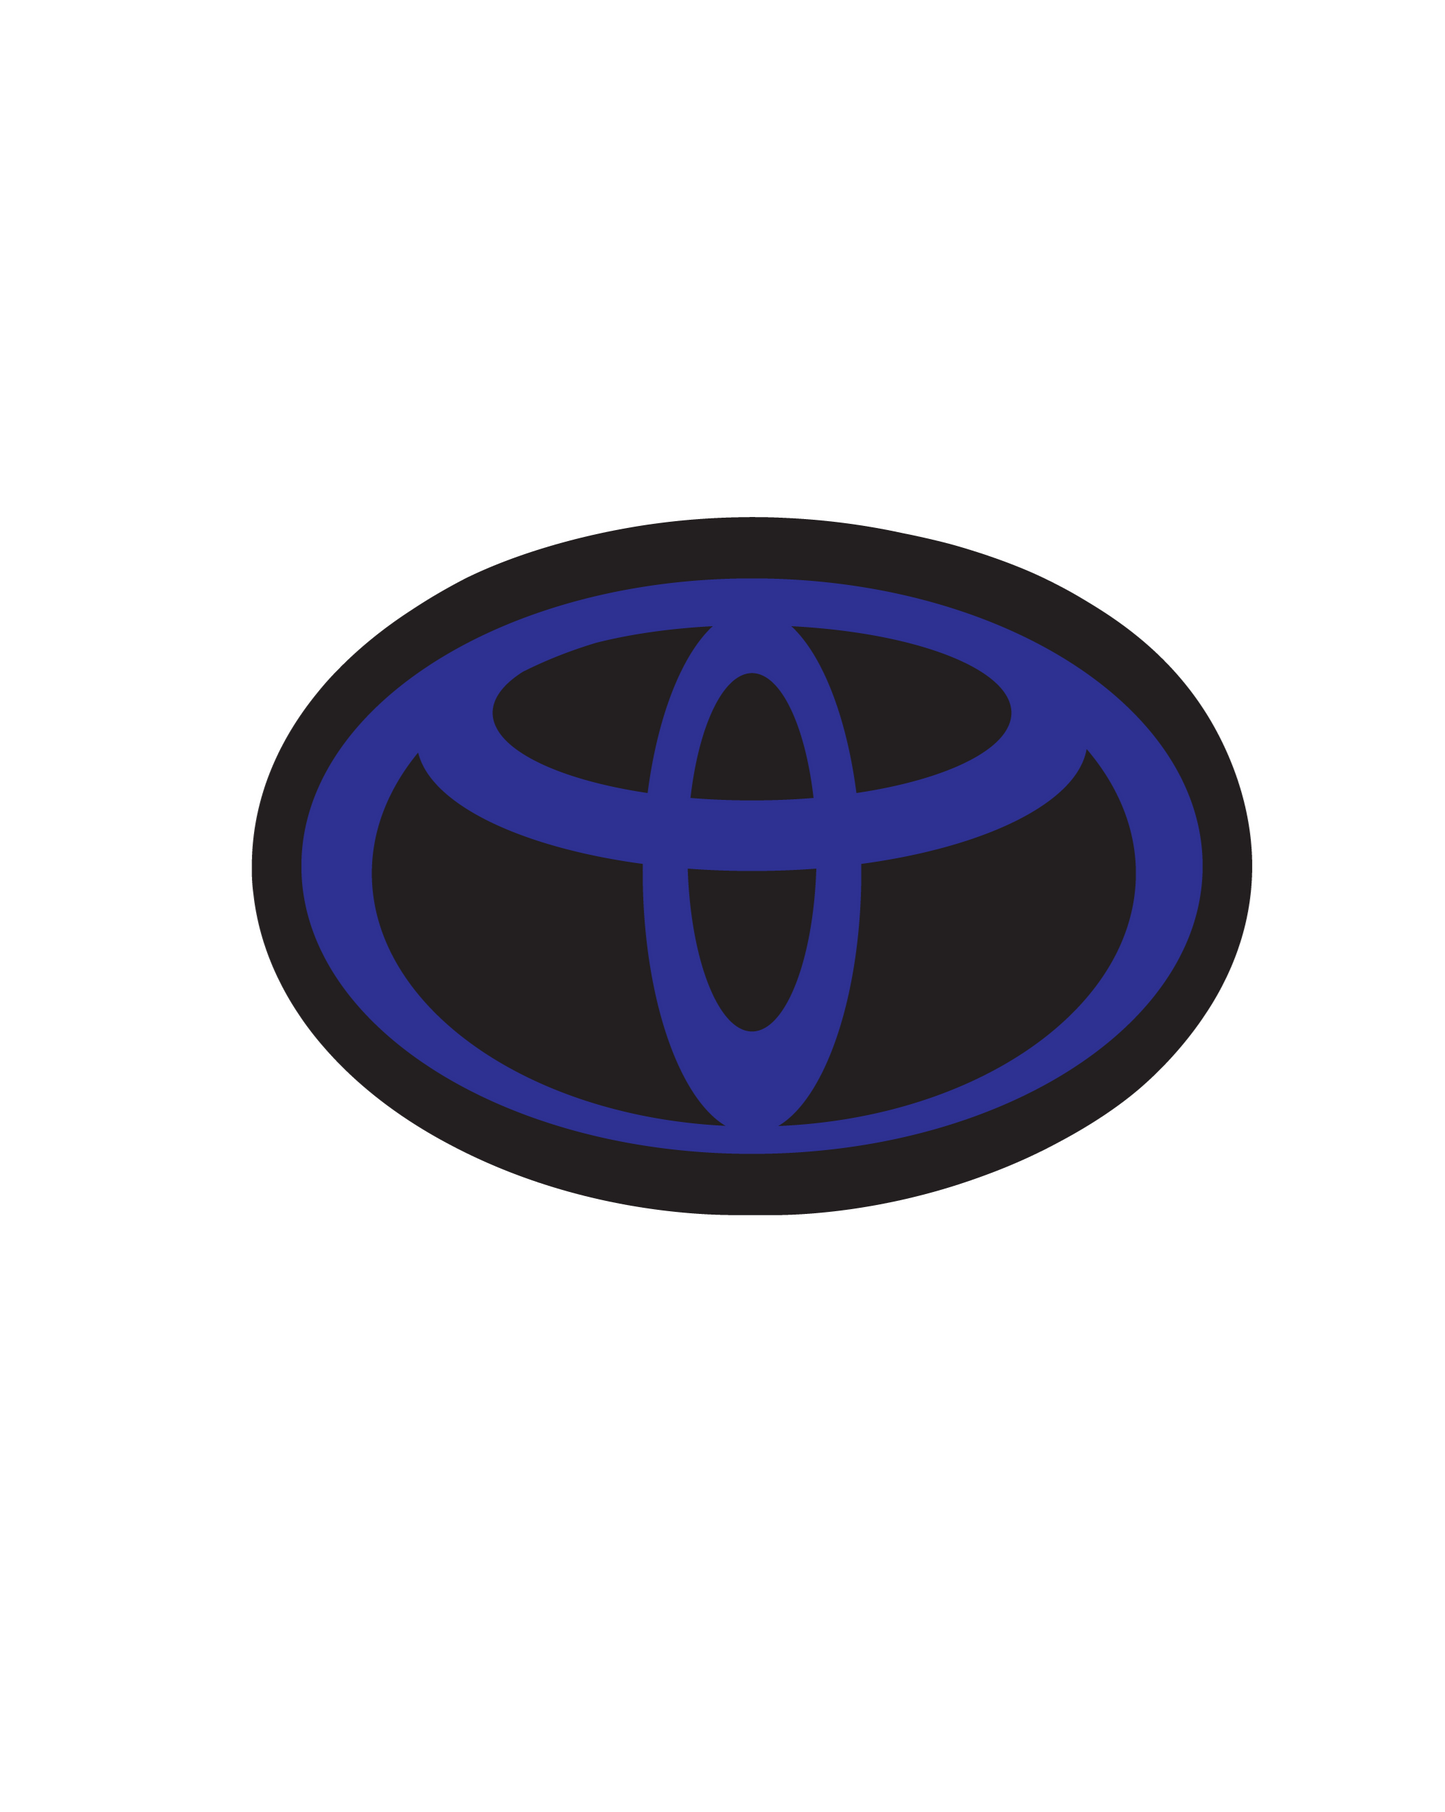 2020-2023 Toyota Supra MKV Vinyl Overlay Set